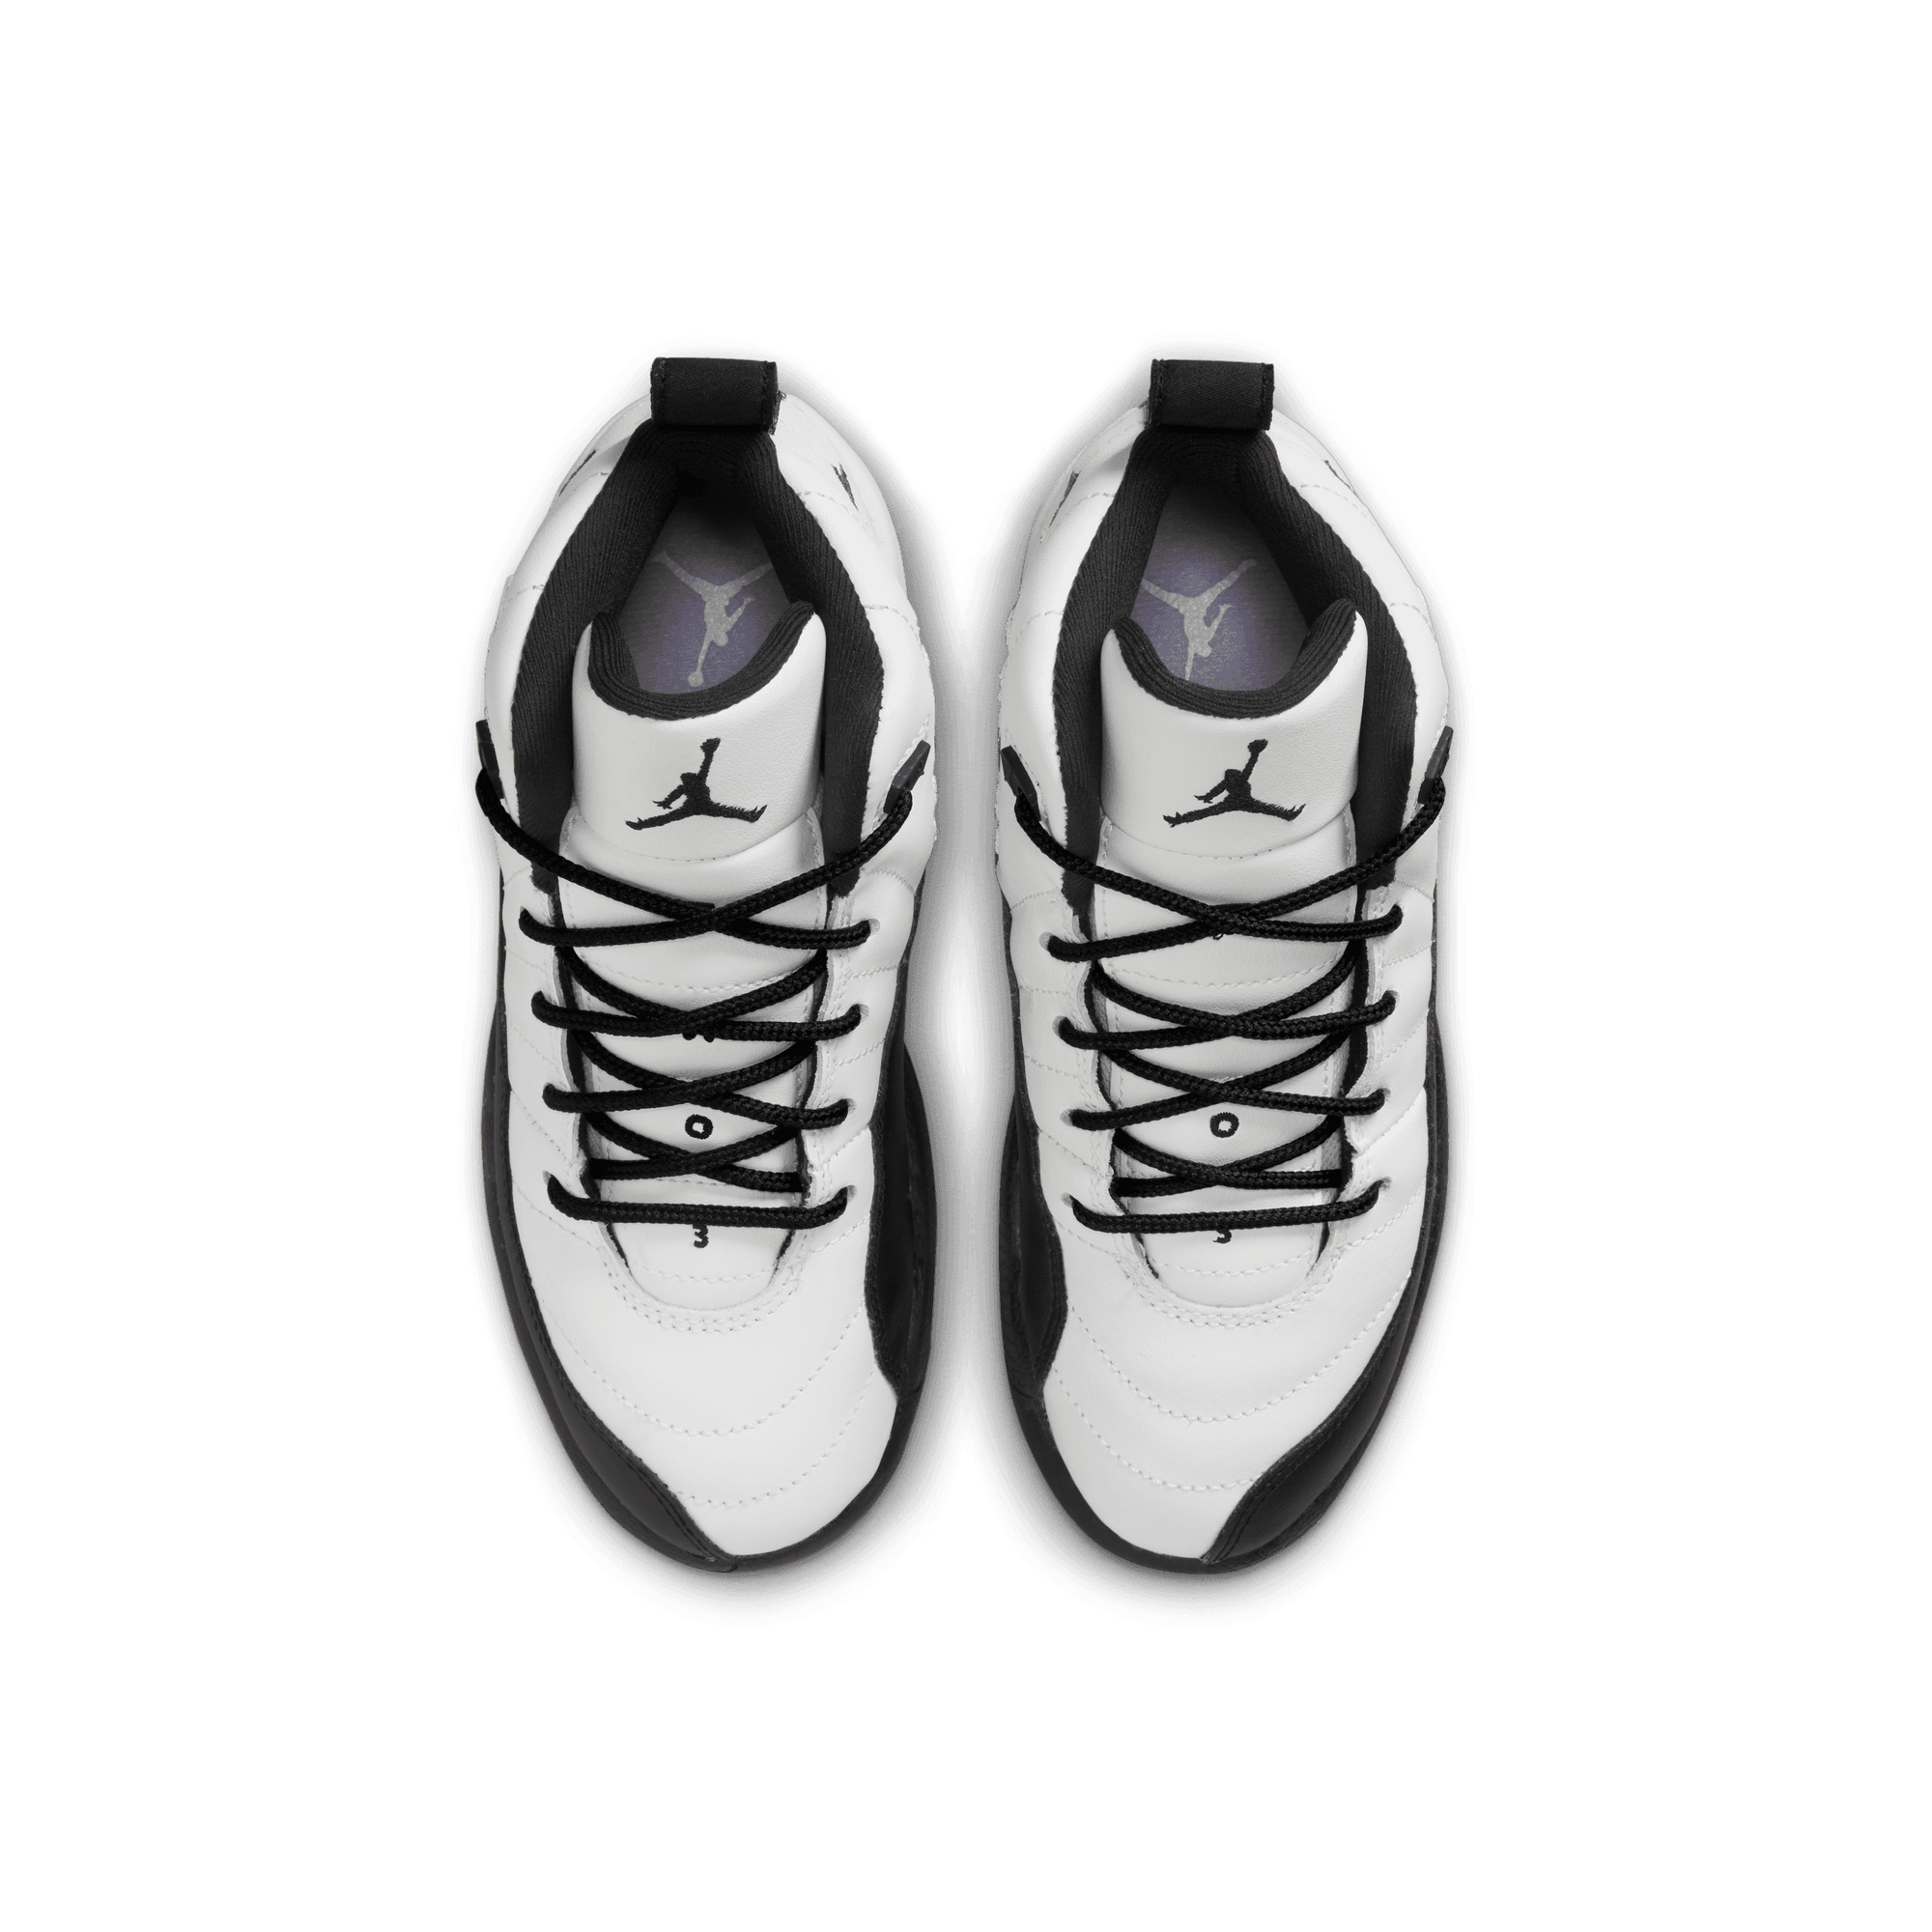 Nike Nike Air Jordan 12 Retro Low Taxi